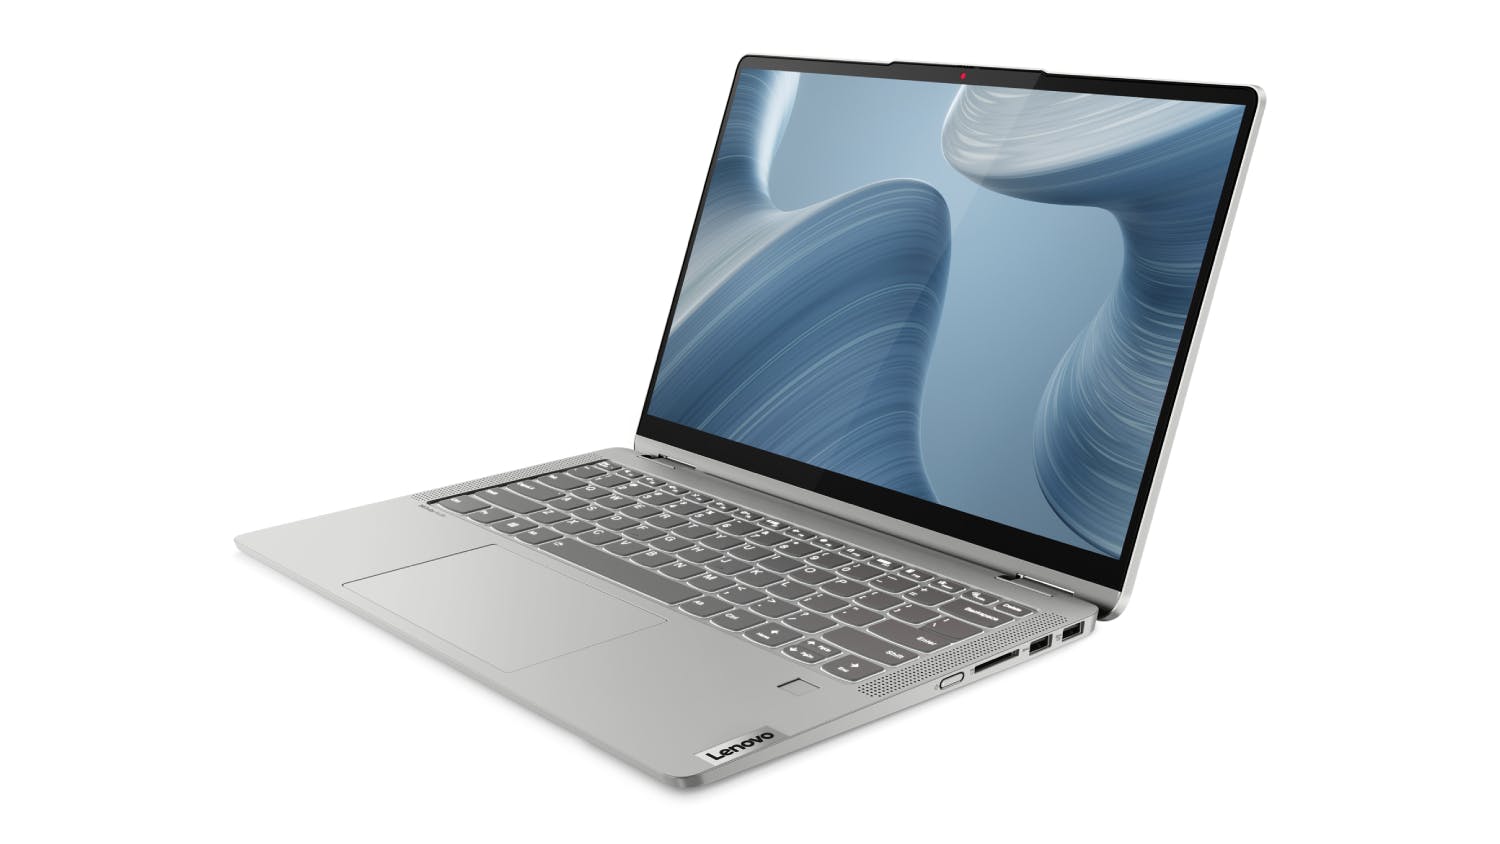 Lenovo IdeaPad Flex 5i (7th Gen) 14" 2-in-1 Laptop - Intel Pentium 4GB-RAM 128GB-SSD (82R700H6AU)